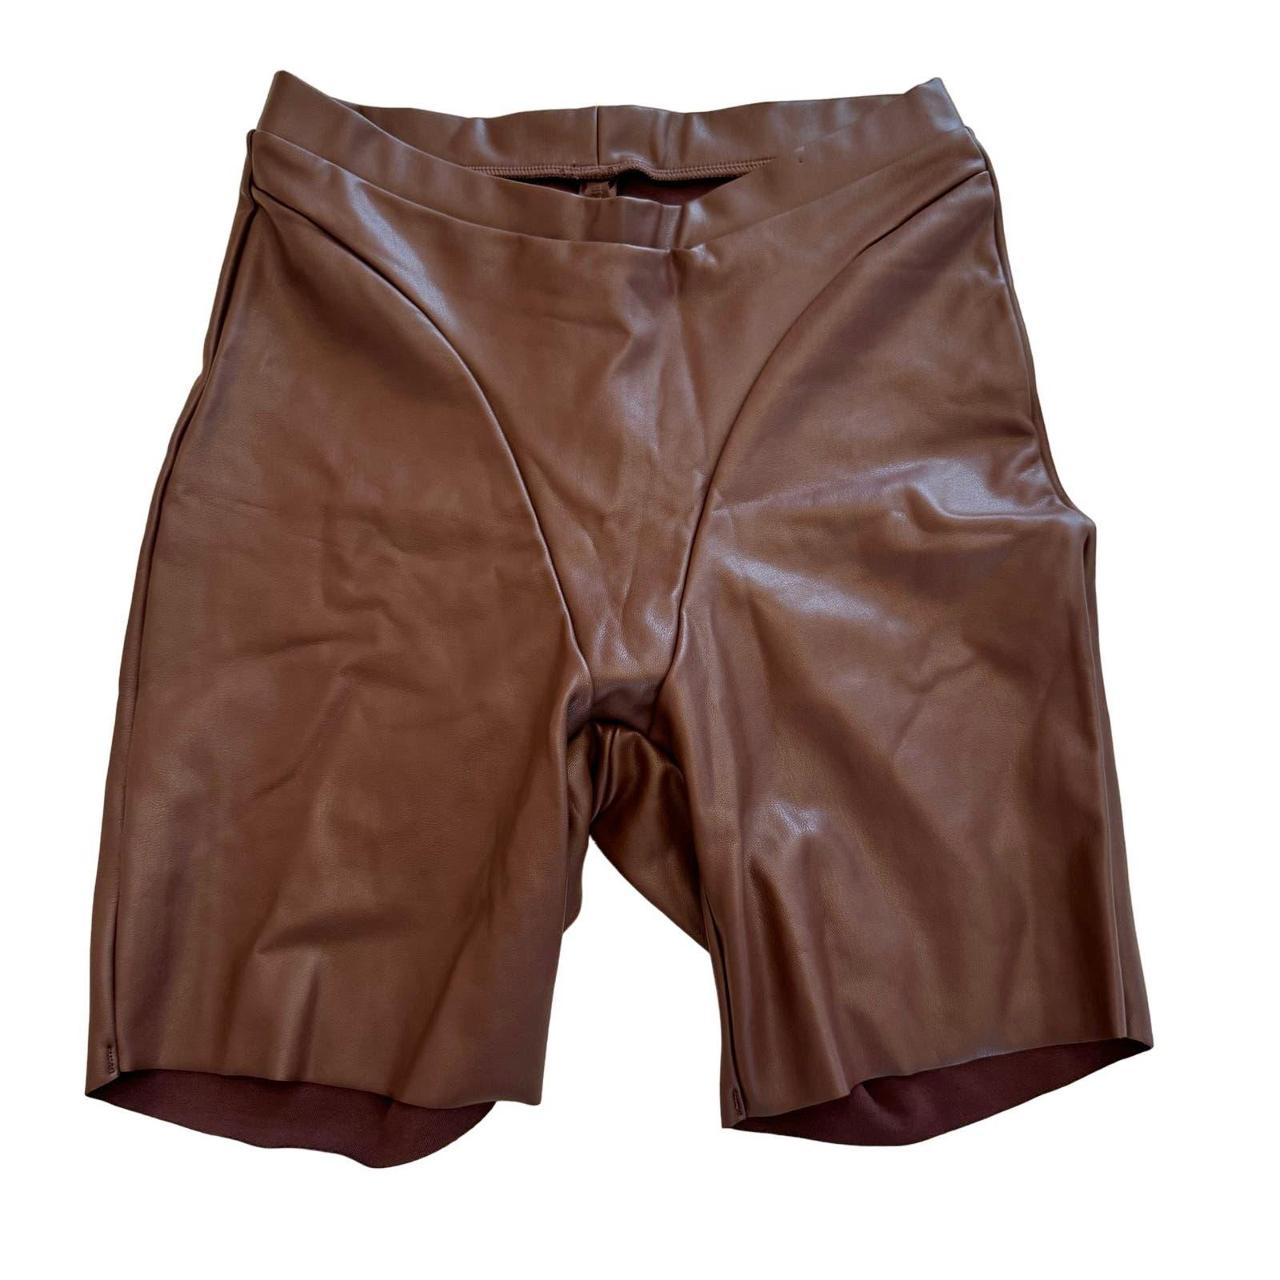 Chocolate Faux Leather Bike Shorts, Shorts